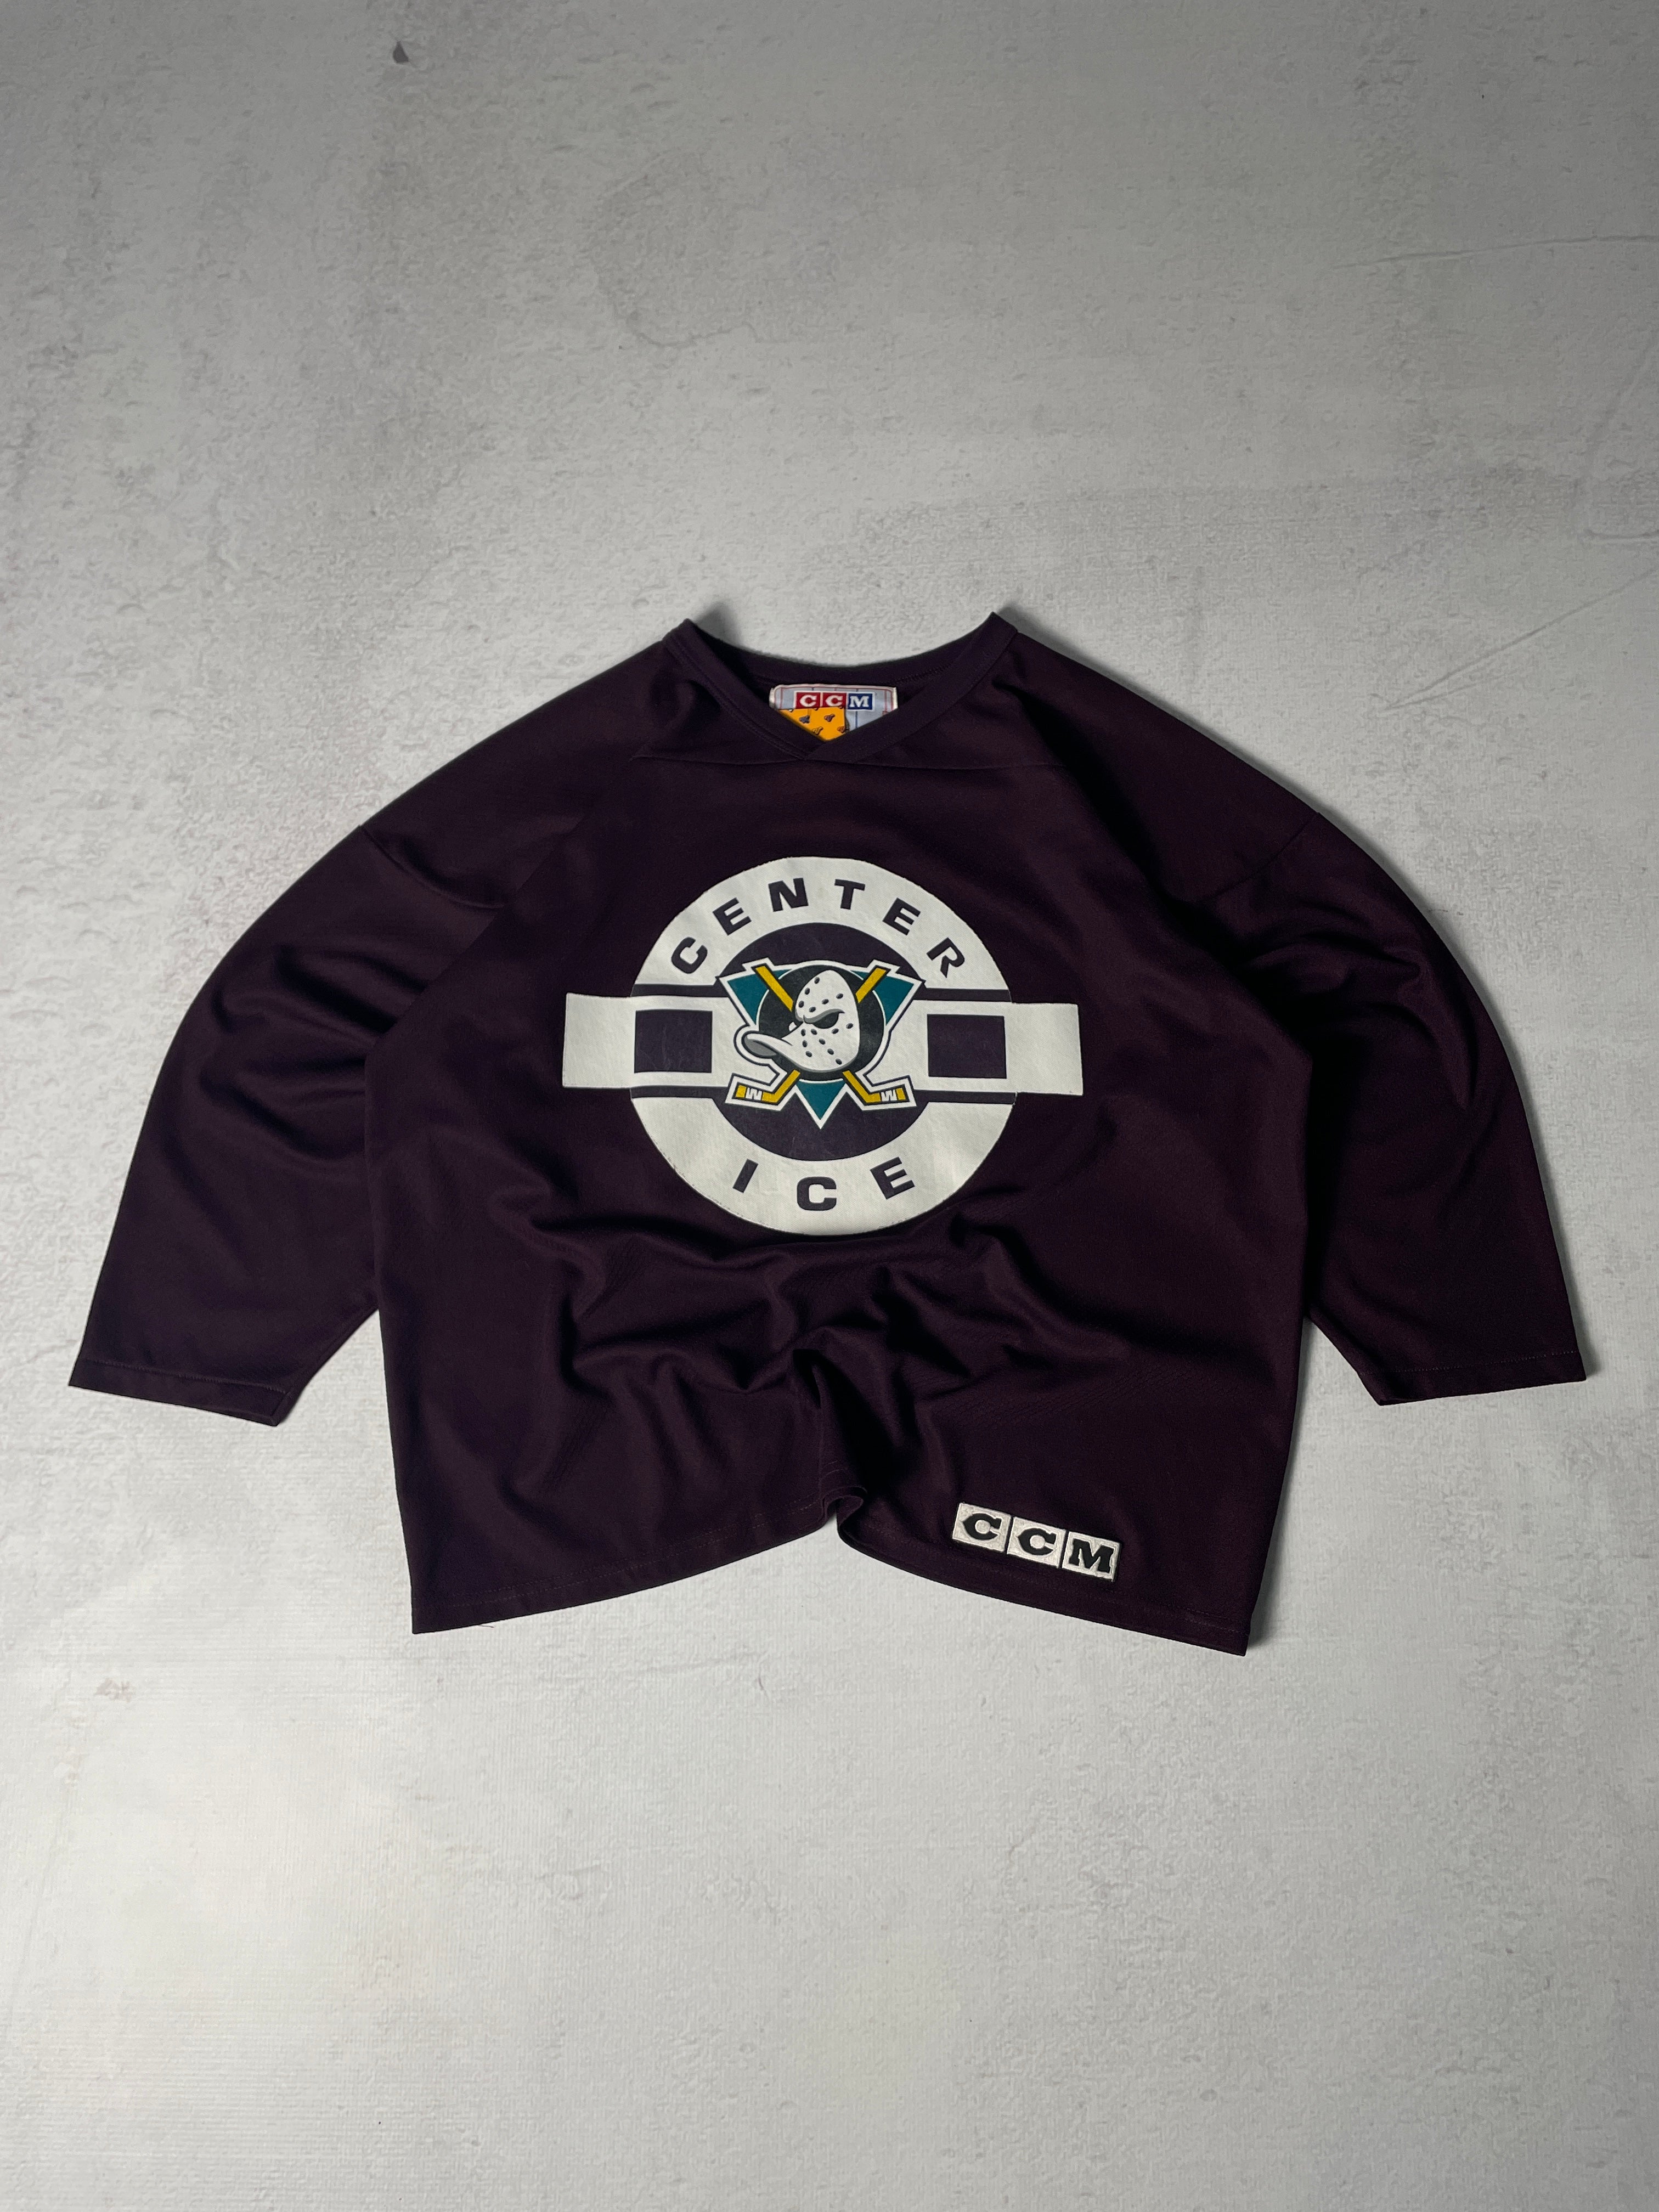 Vintage NHL Anaheim Ducks Jersey - Men's XL